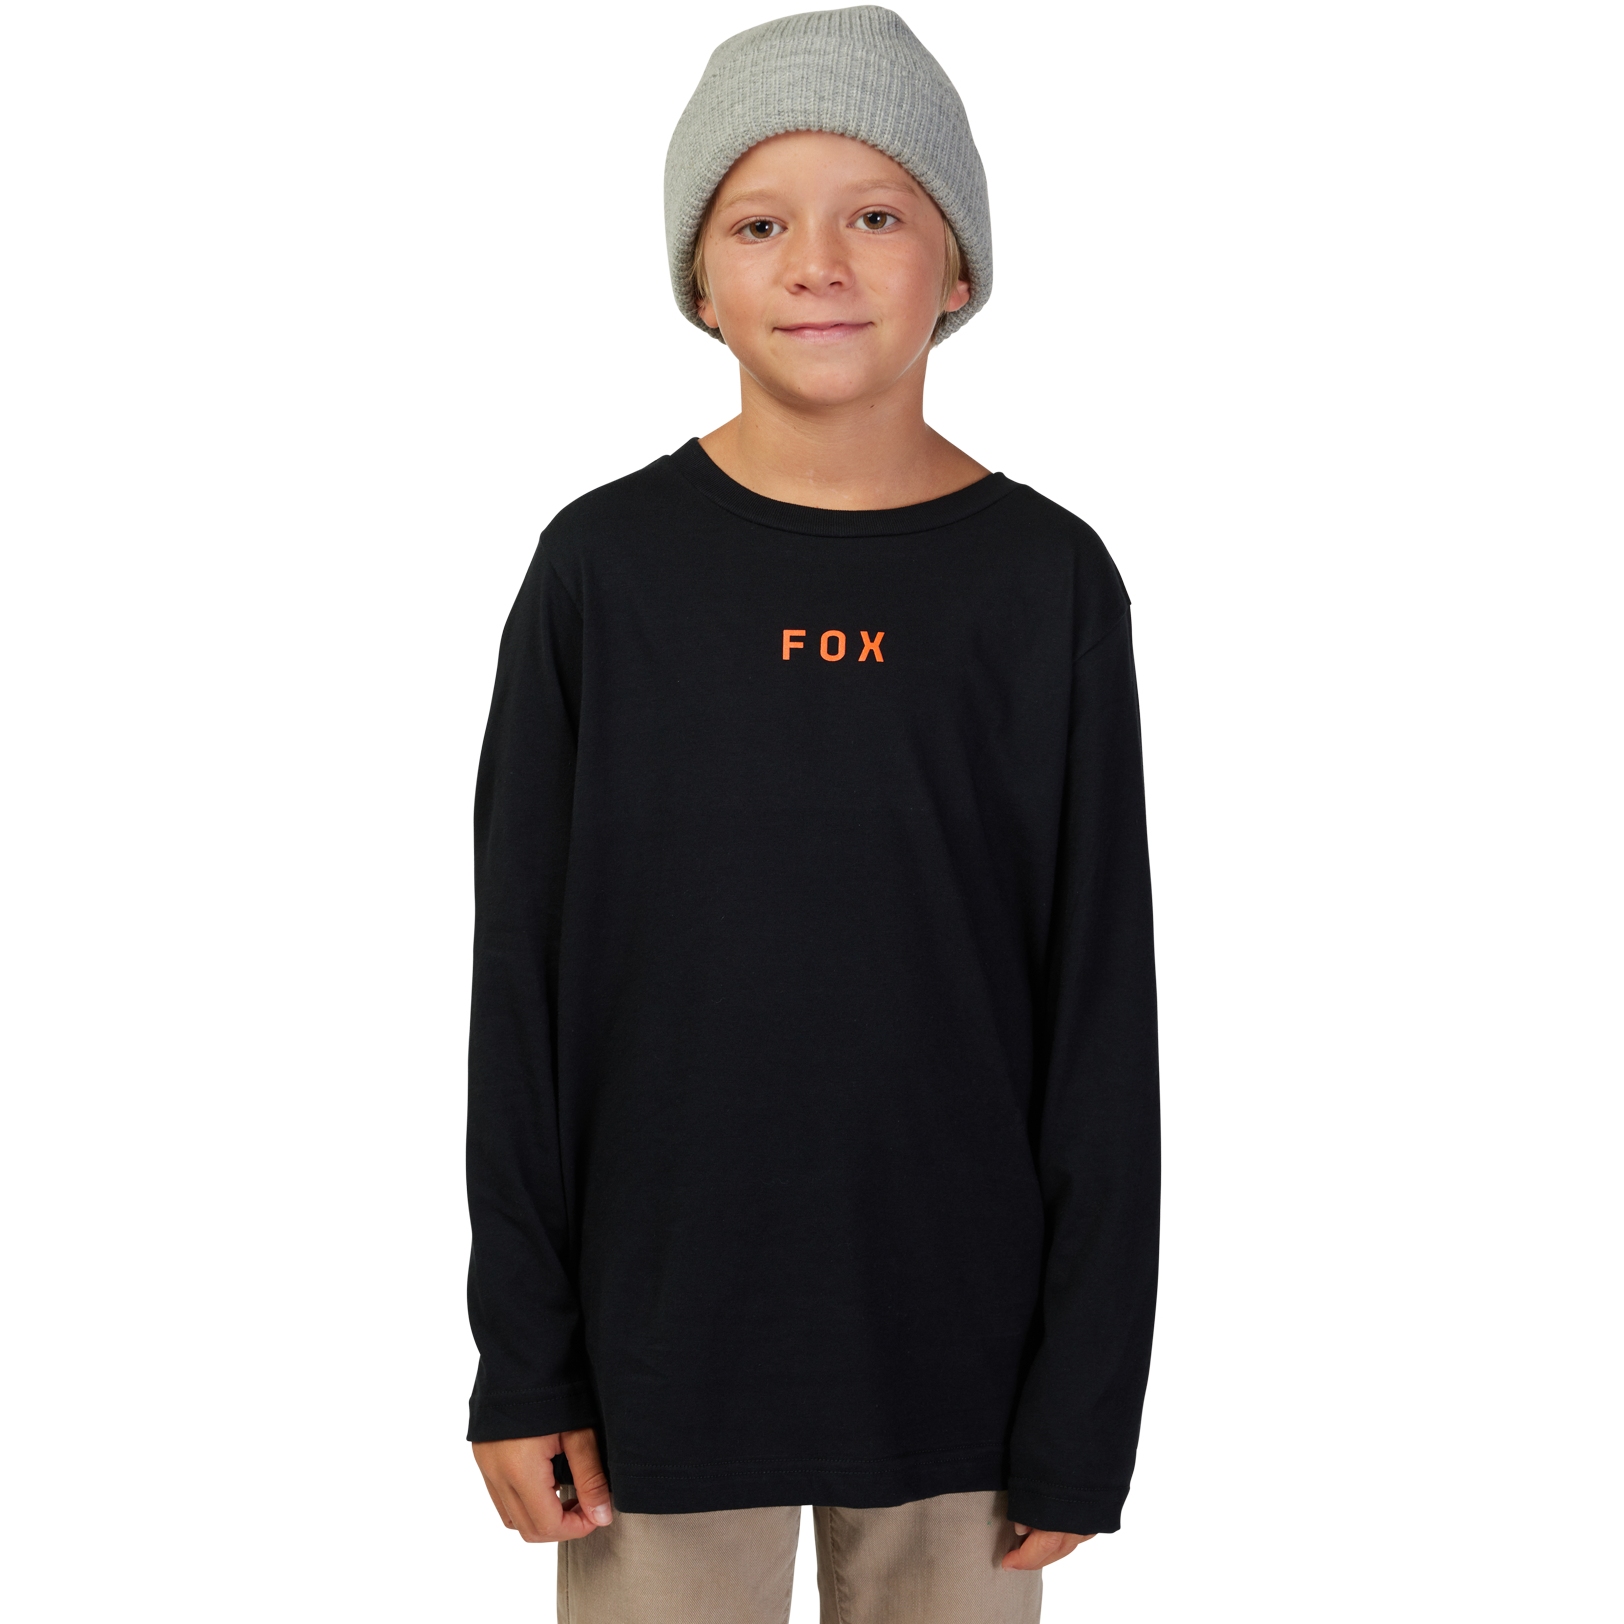 Produktbild von FOX Magnetic Langarmshirt Kinder - schwarz